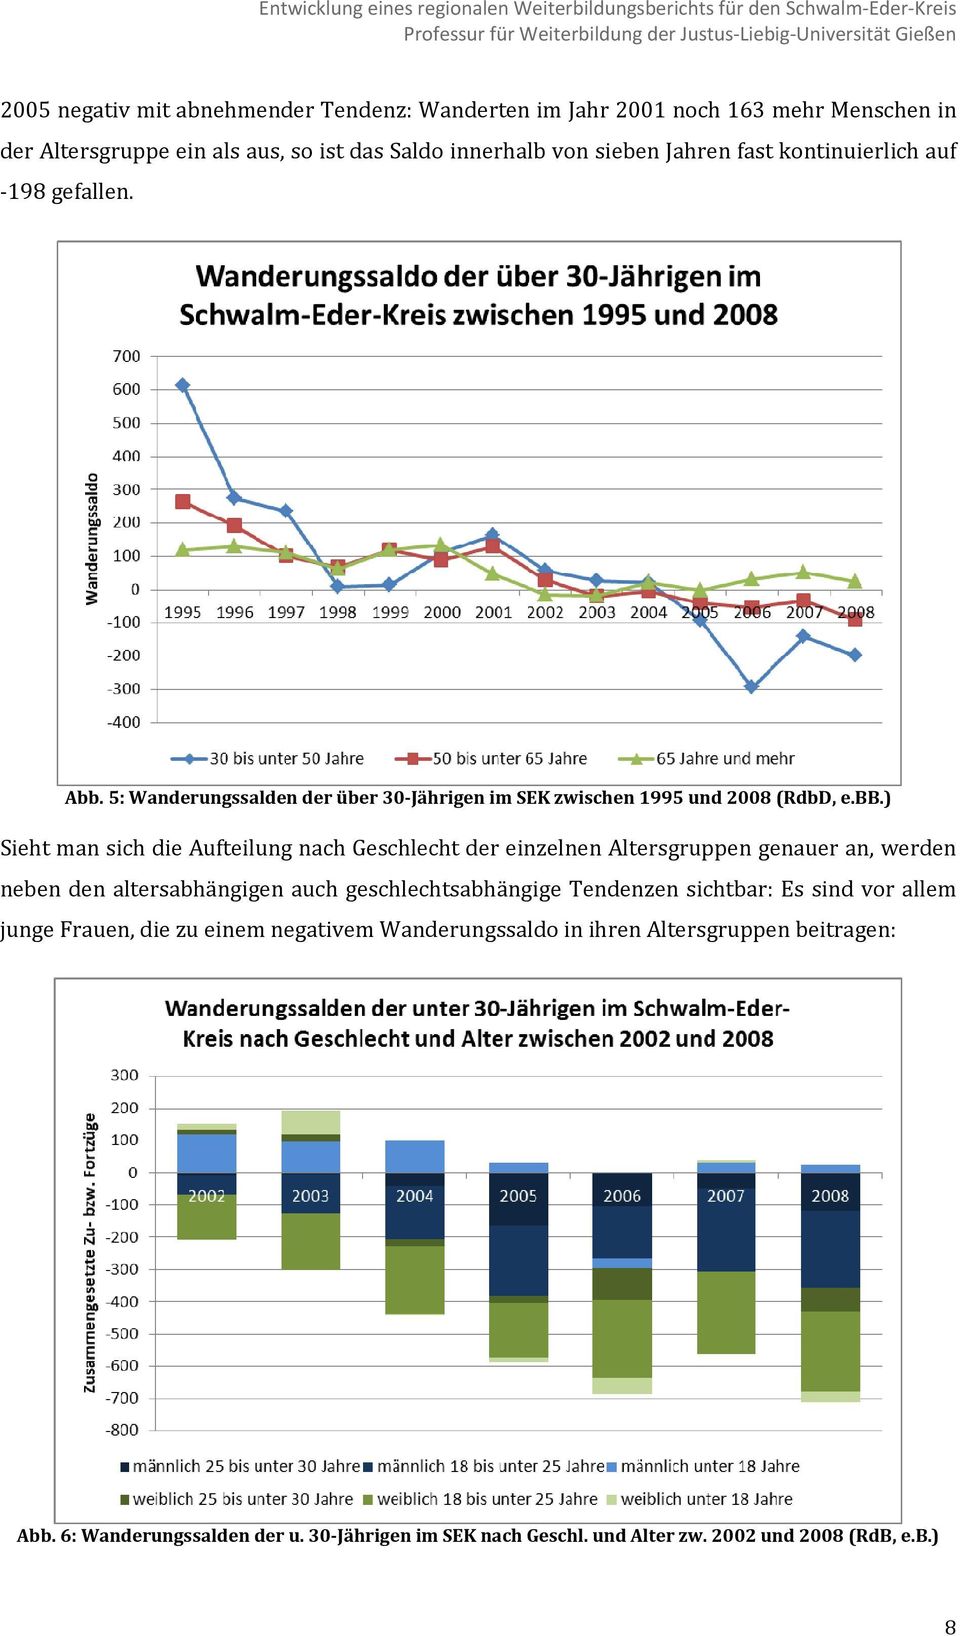 5: Wanderungssalden der über 30 Jährigen im SEK zwischen 1995 und 2008 (RdbD, e.bb.